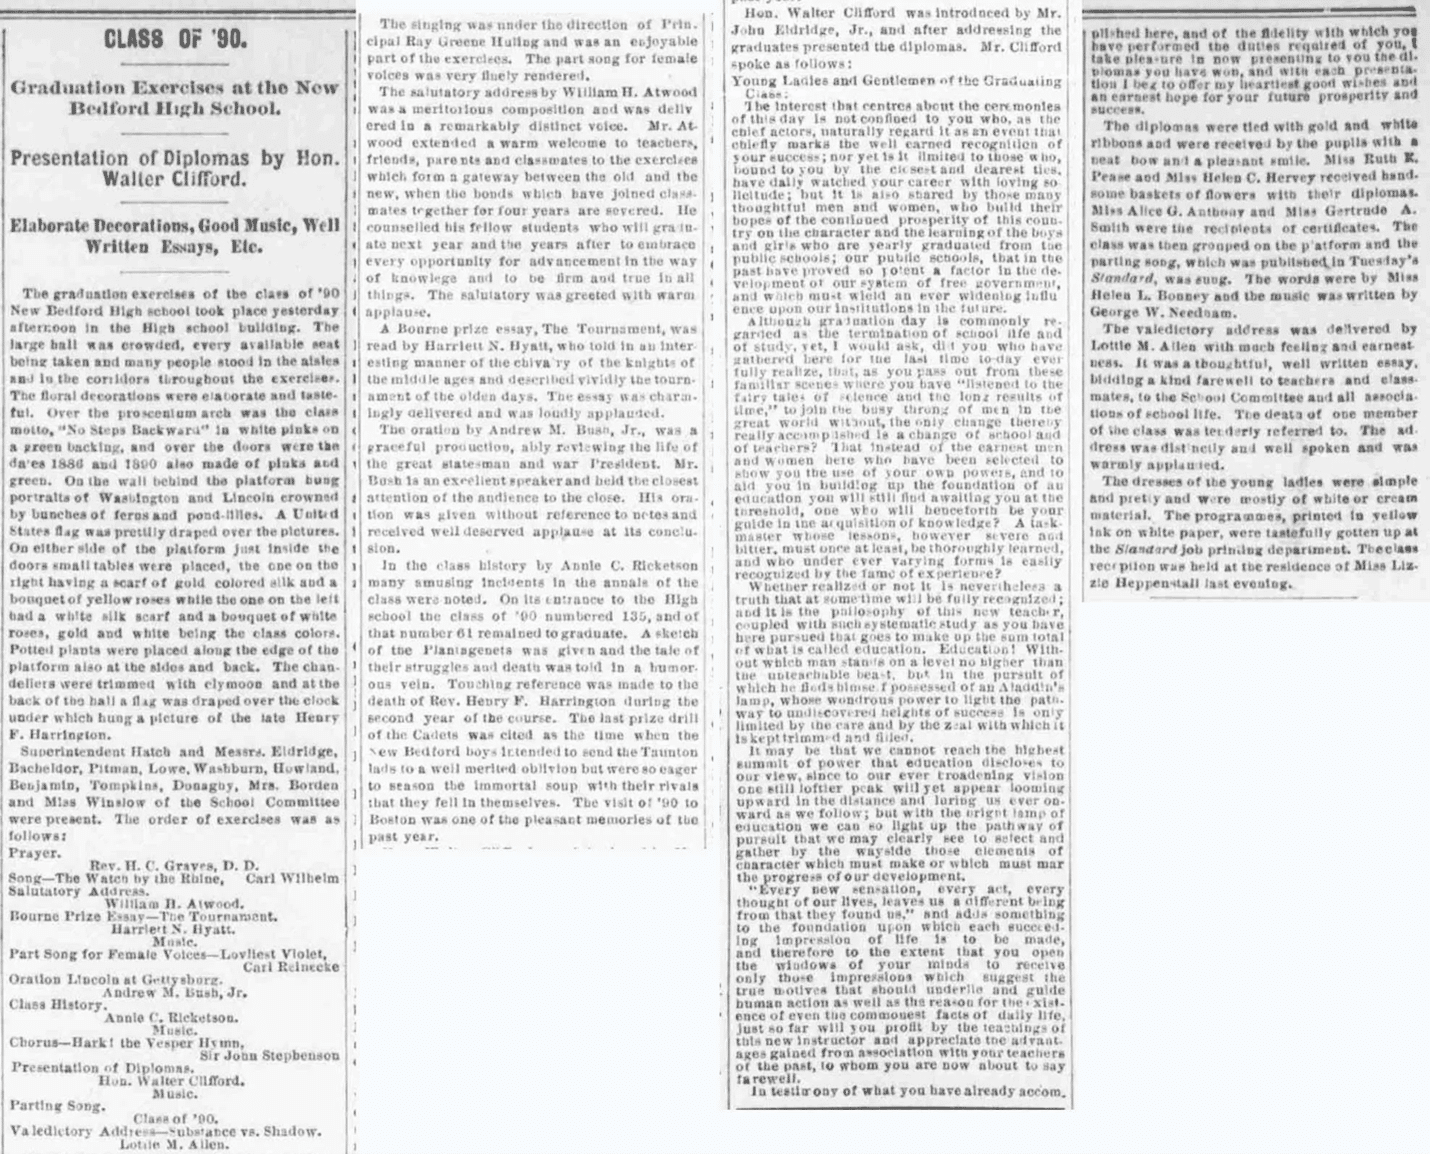 Class of ’90”, artykuł prasowy, The Evening Standard (New Bedford, Massachusetts), 28 czerwca 1890, s. 2, kol. 6.